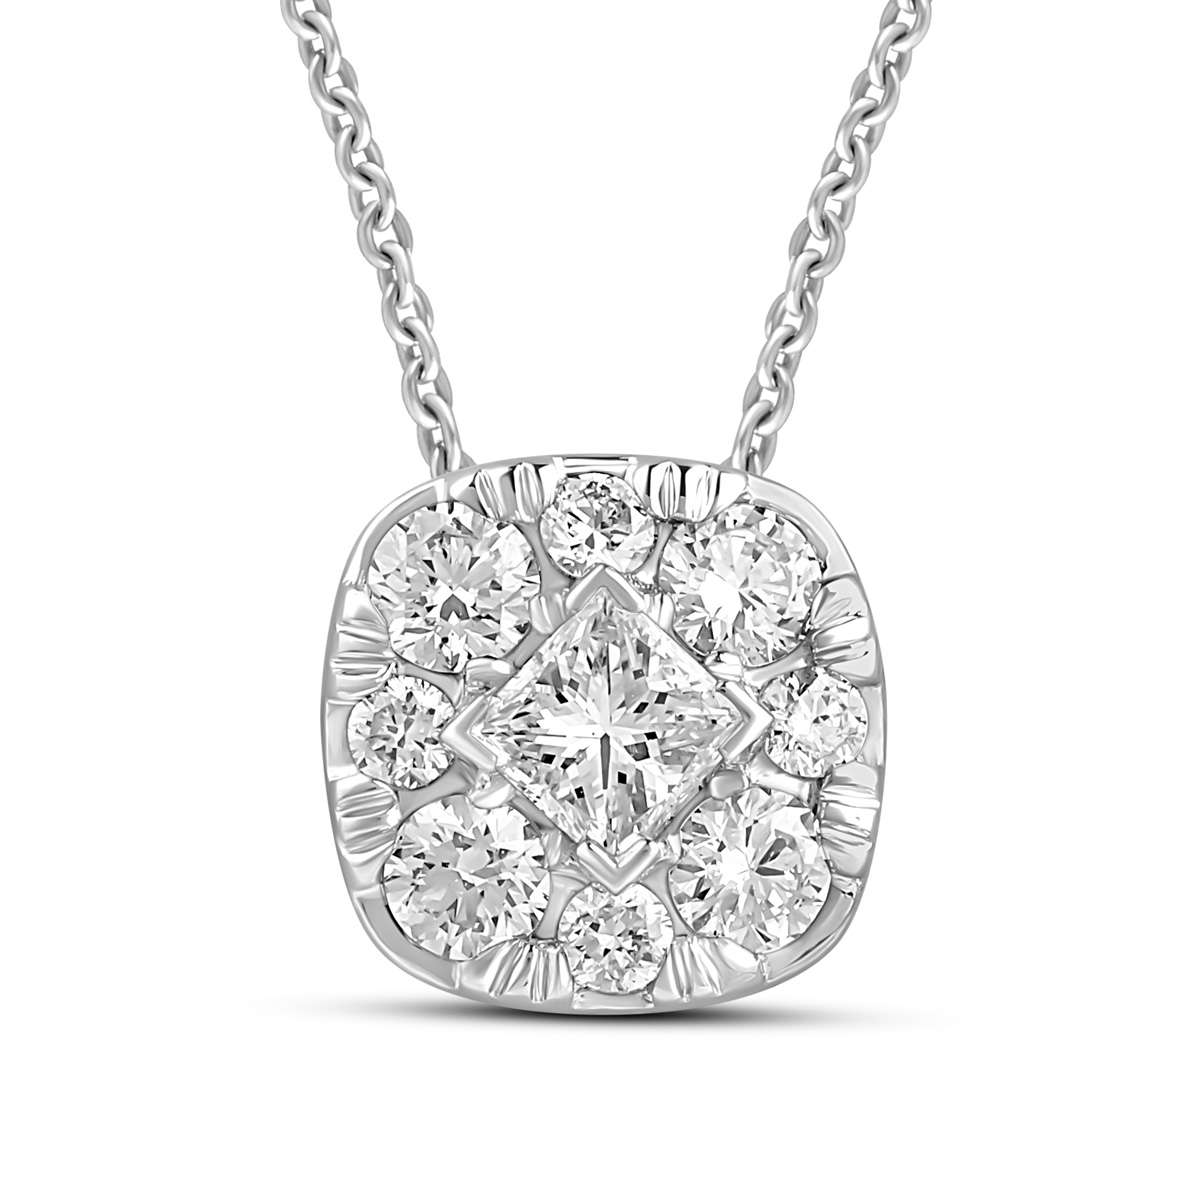 HE53118SWD4WN
14K White Gold princess cut diamond pendant